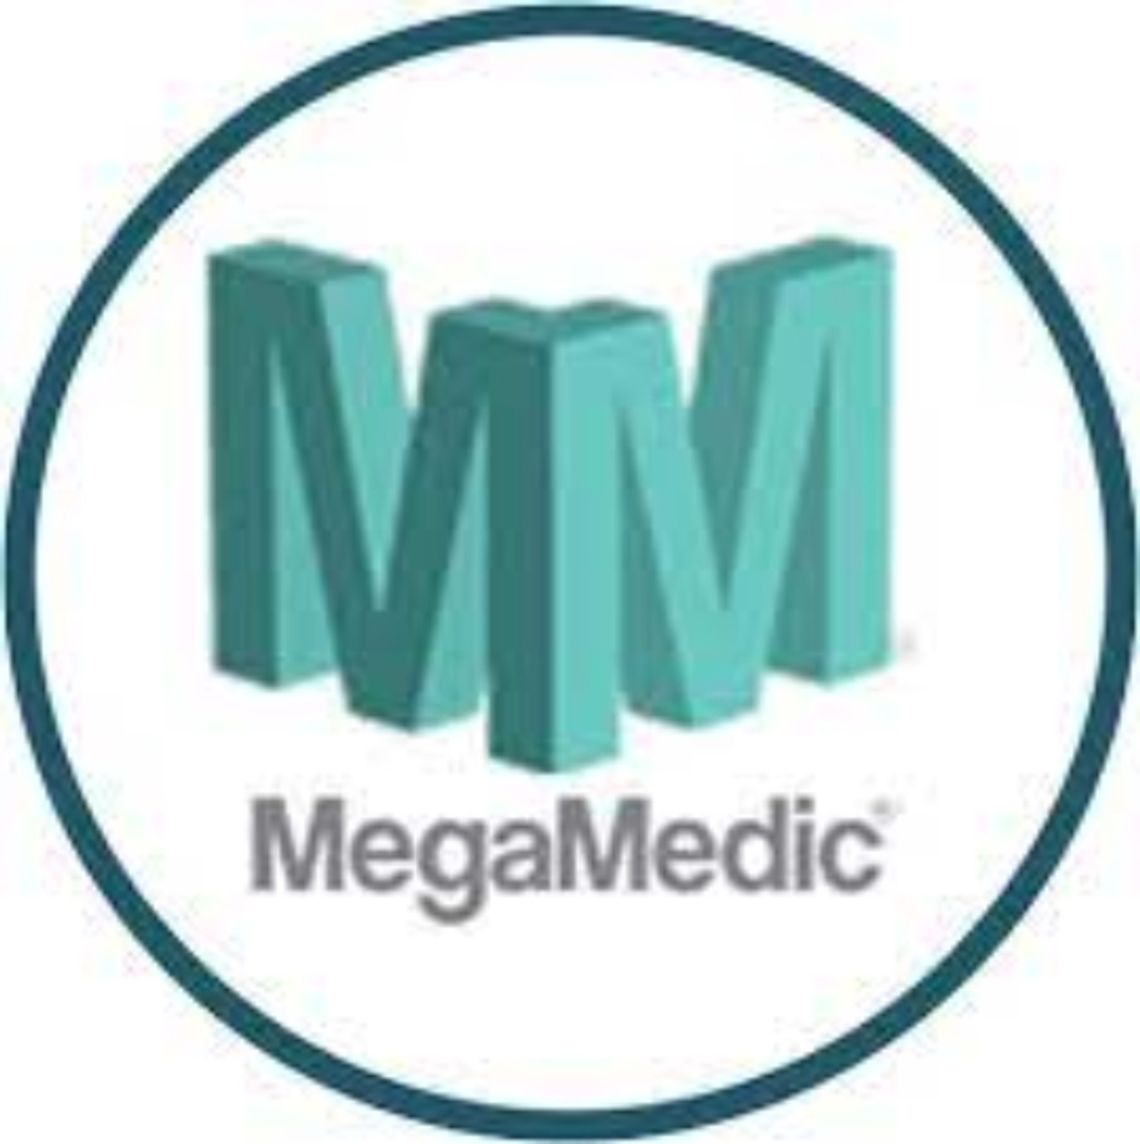 Megamedic - Twoje centrum rehabilitacyjne i ortopedyczne